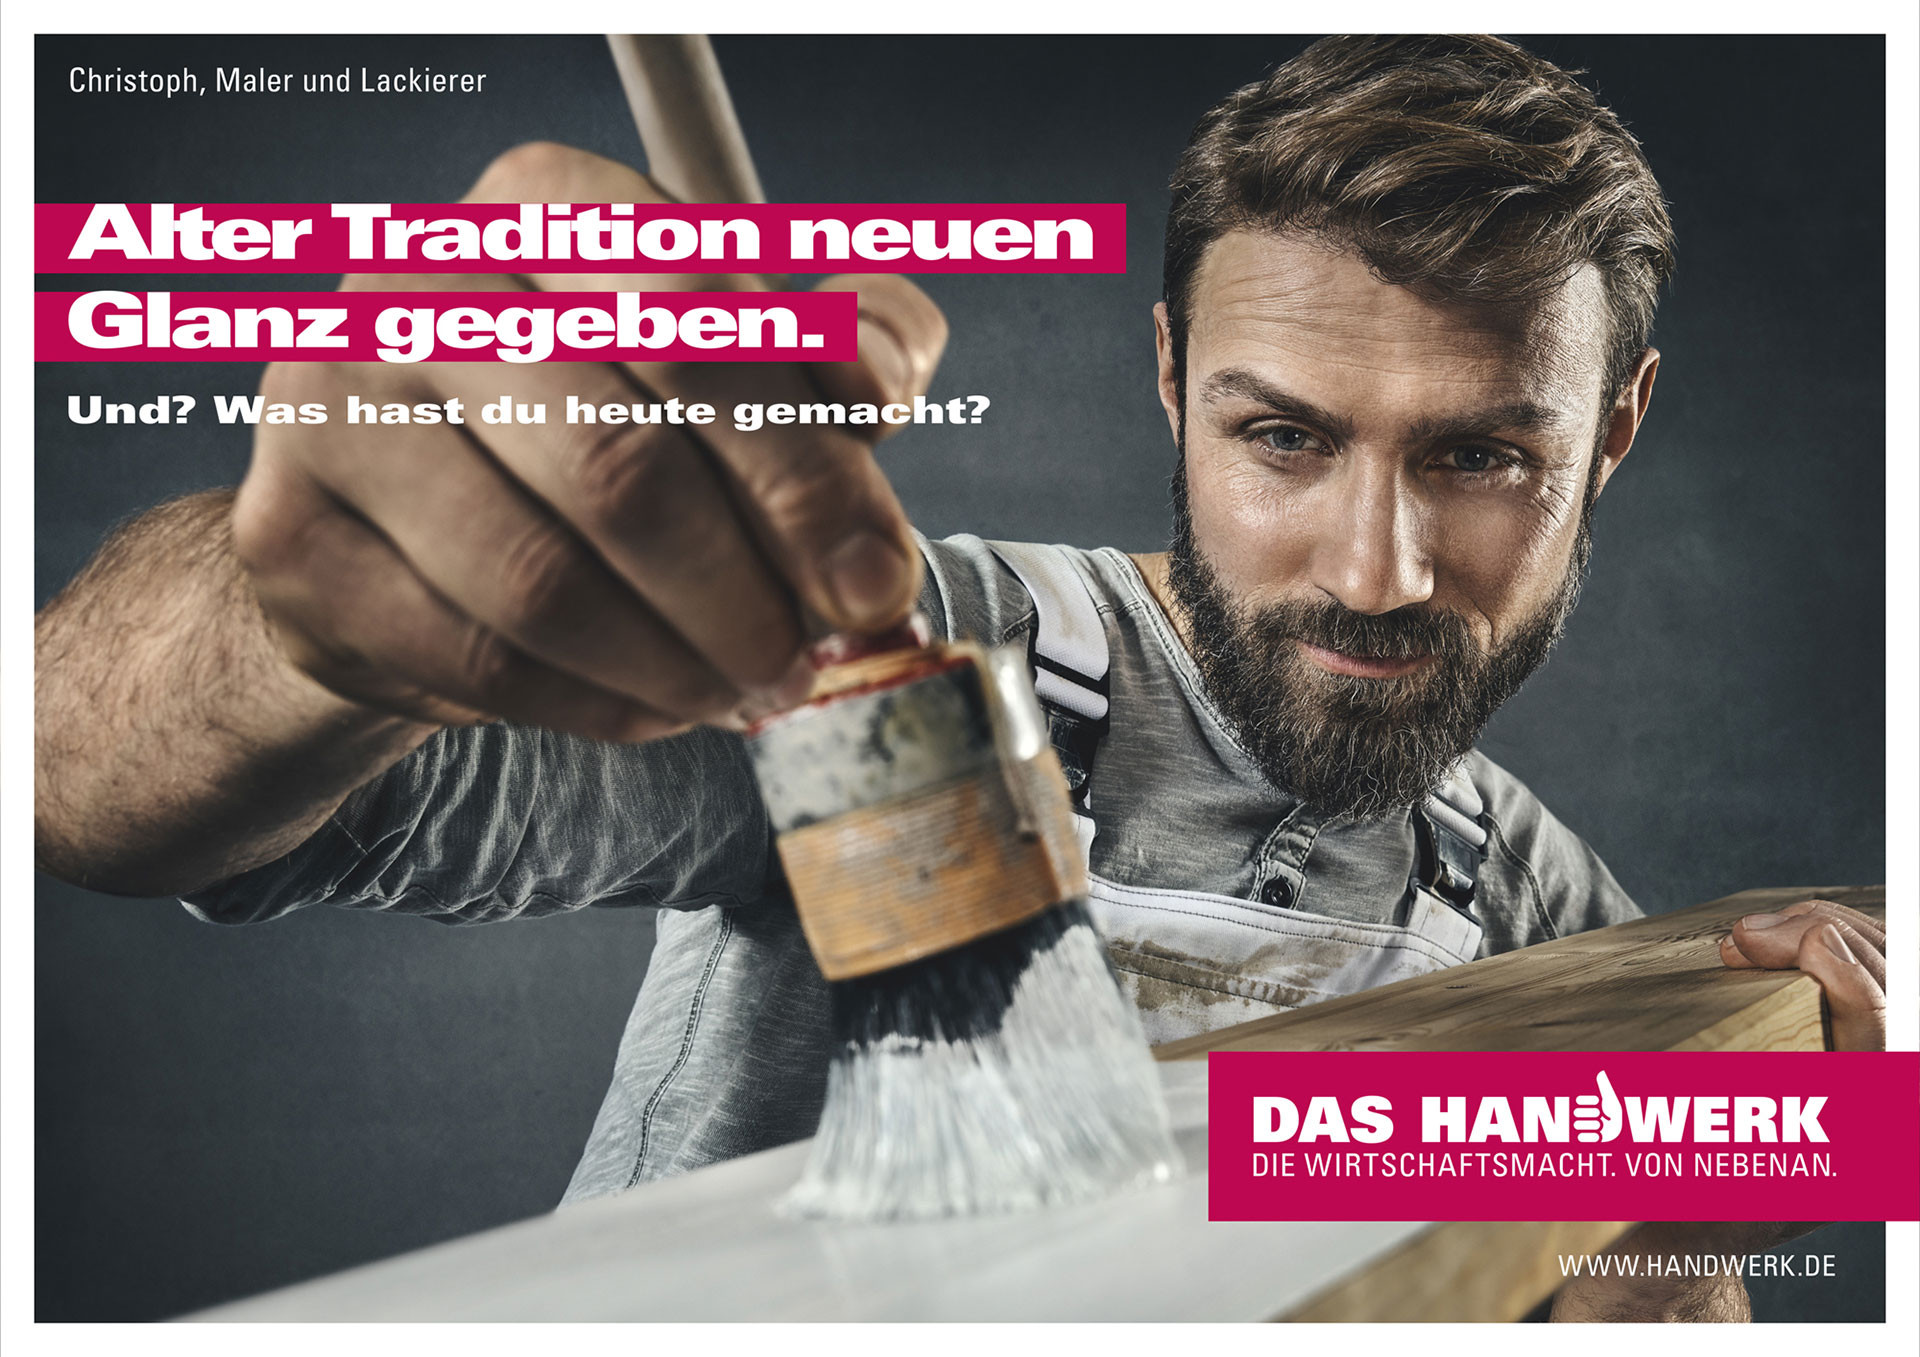 Handwerk Werbung
 Markus Mueller DAS HANDWERK Kampagne Und Was hast Du